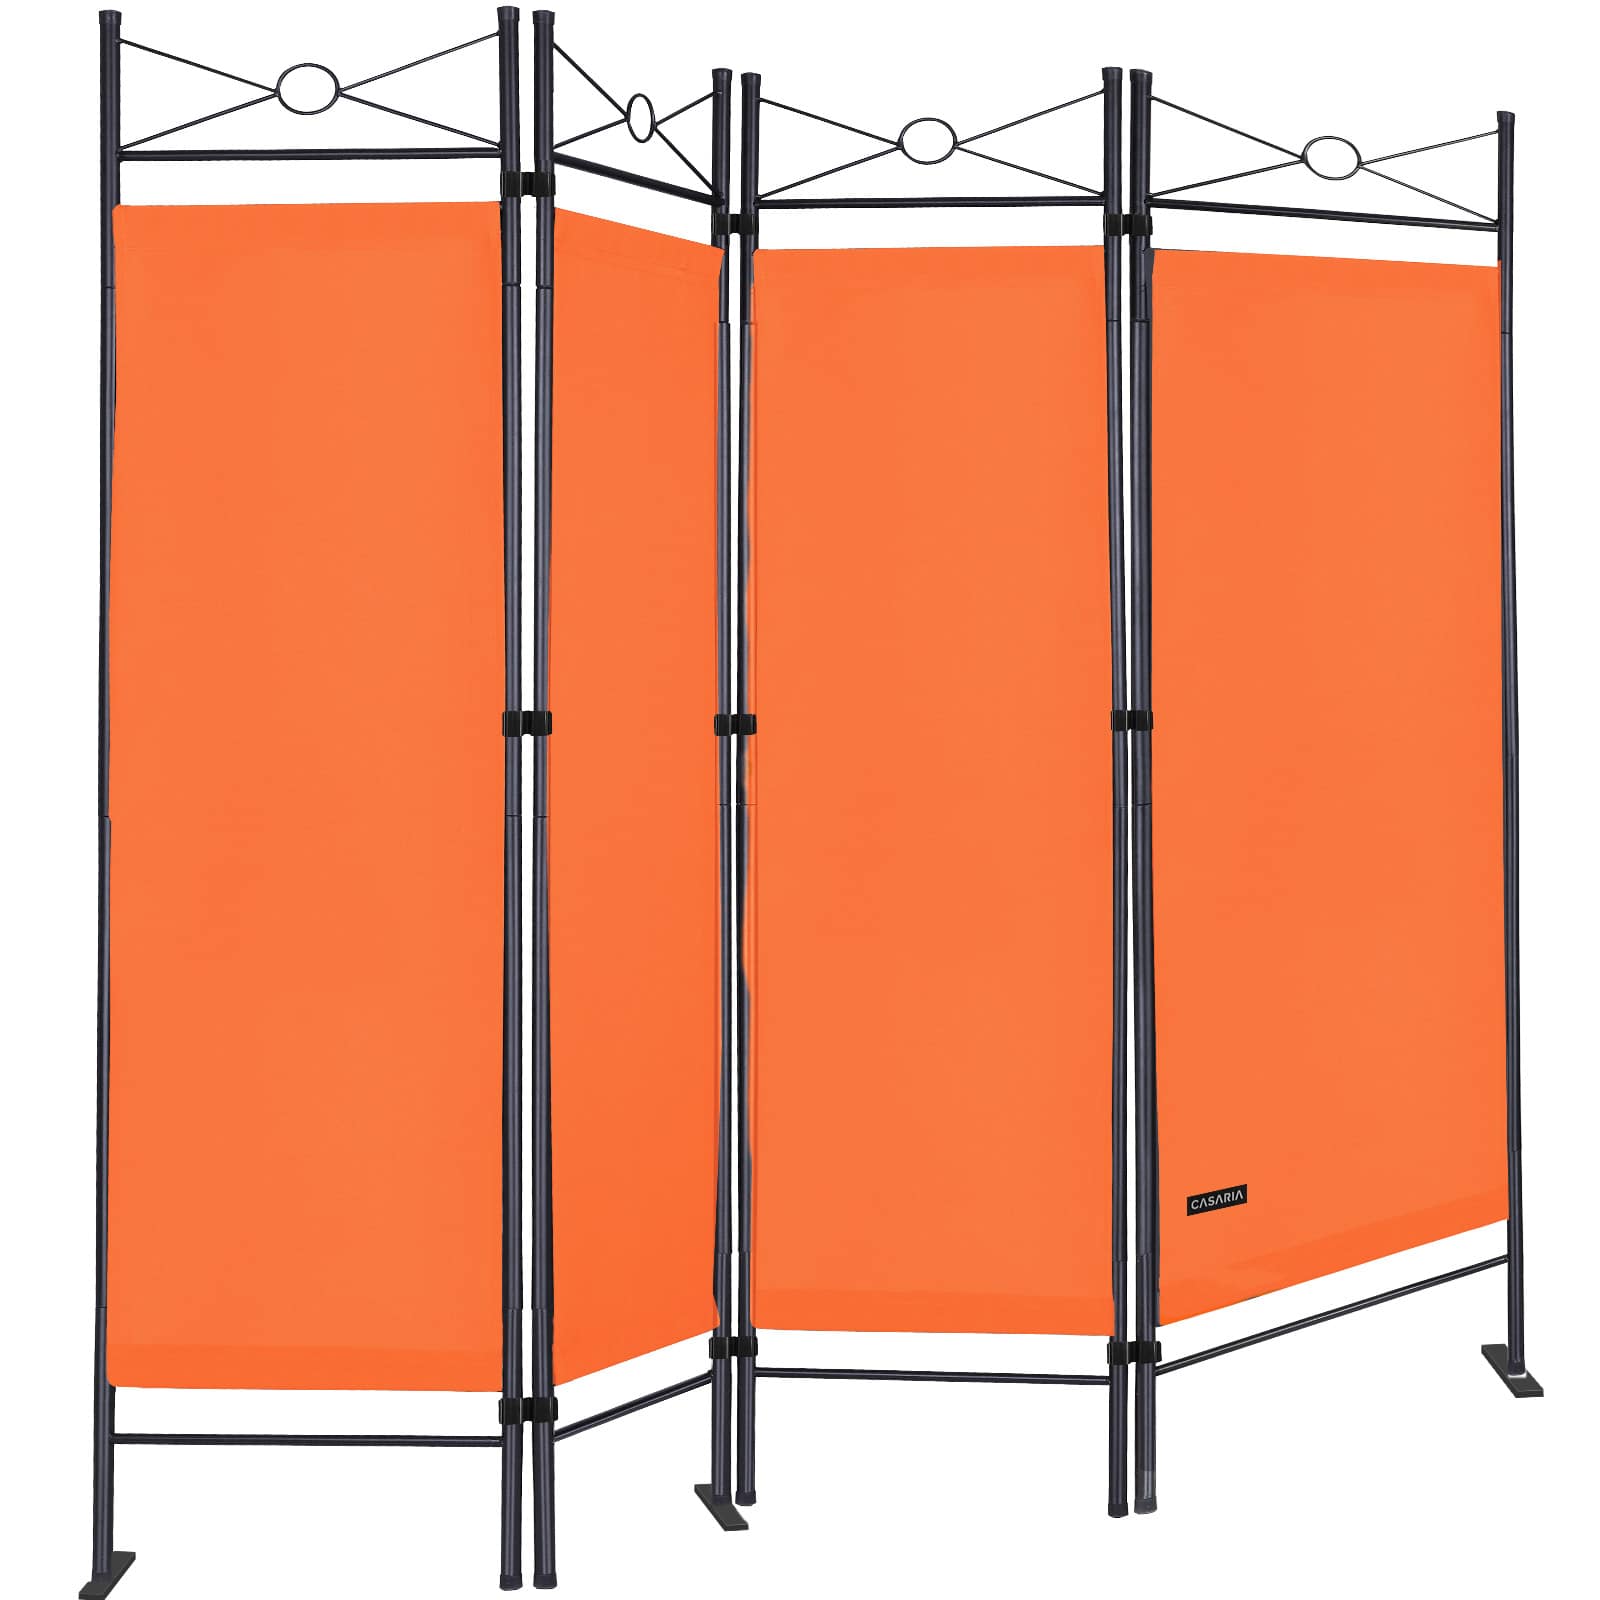 #2 - Skillevæg Lucca 180x163cm fleksibel bund uigennemsigtig 30Â°C vaskbar stabil indendørs stue skærm rumskillevæg, farve: orange